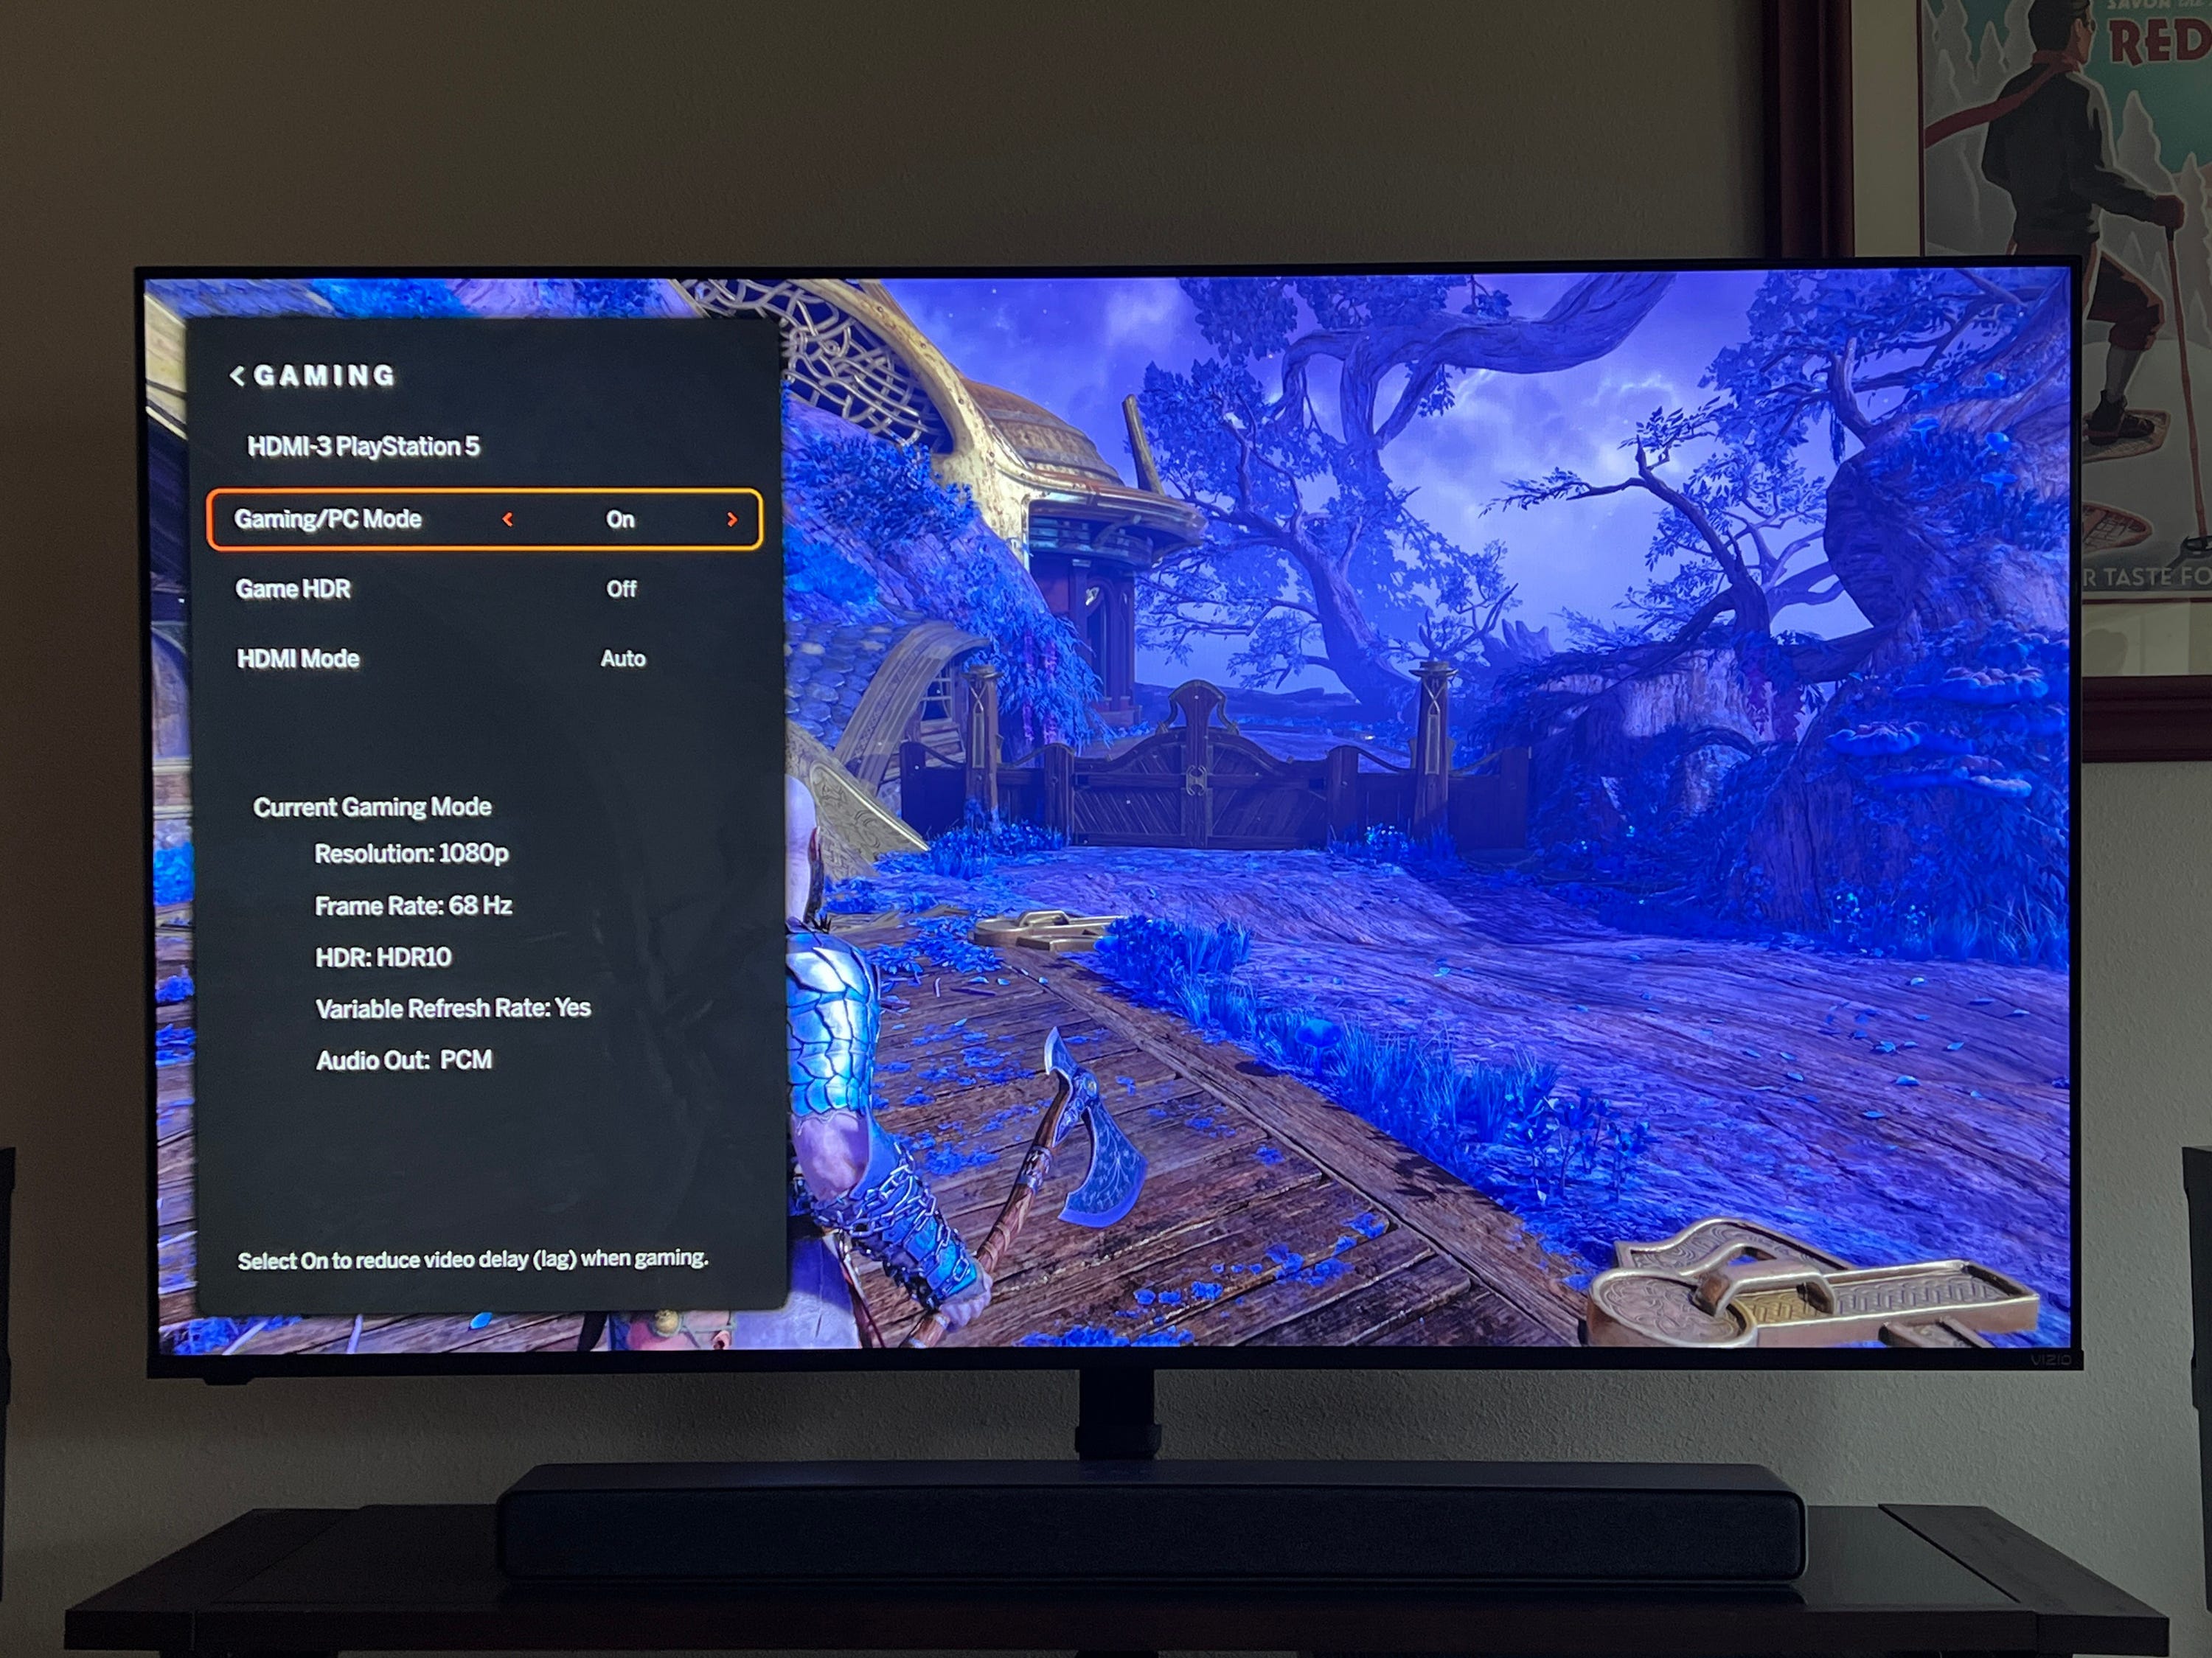 Ein Vizio-Fernseher zeigt sein Gaming-Signalmenü an, während auf dem Bildschirm God of Ward gespielt wird.